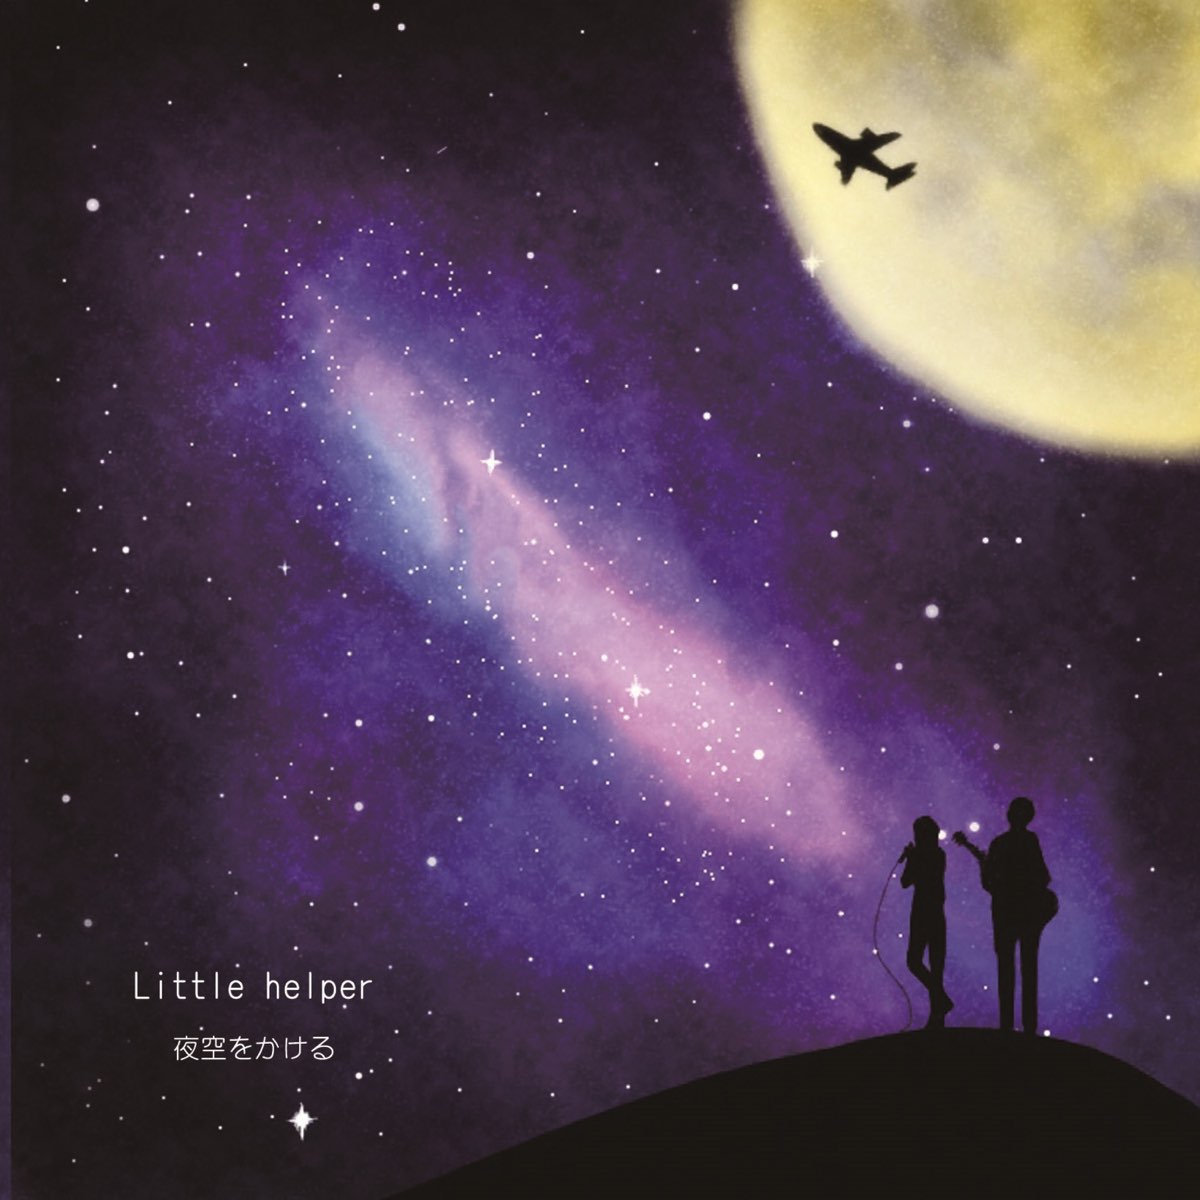 Little Helperの 夜空をかける Single をapple Musicで